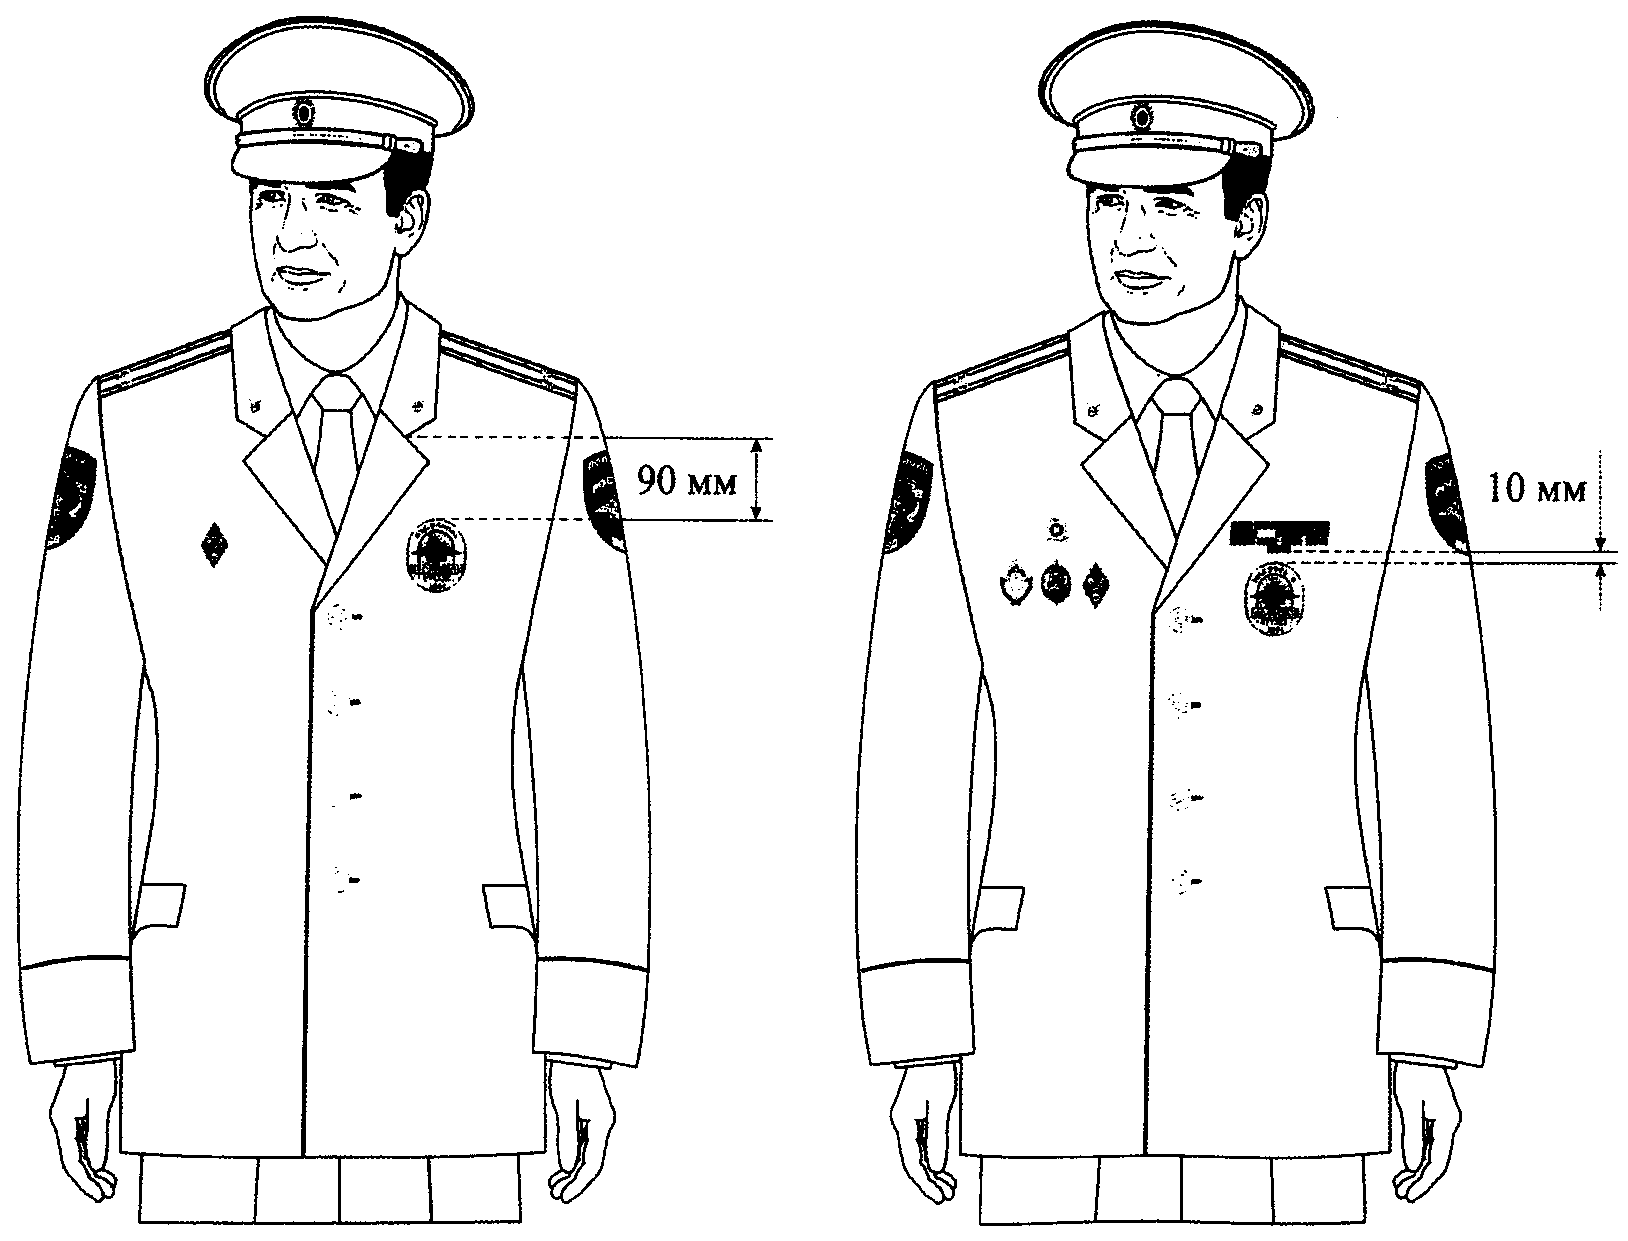 Форменная одежда полиции правила ношения